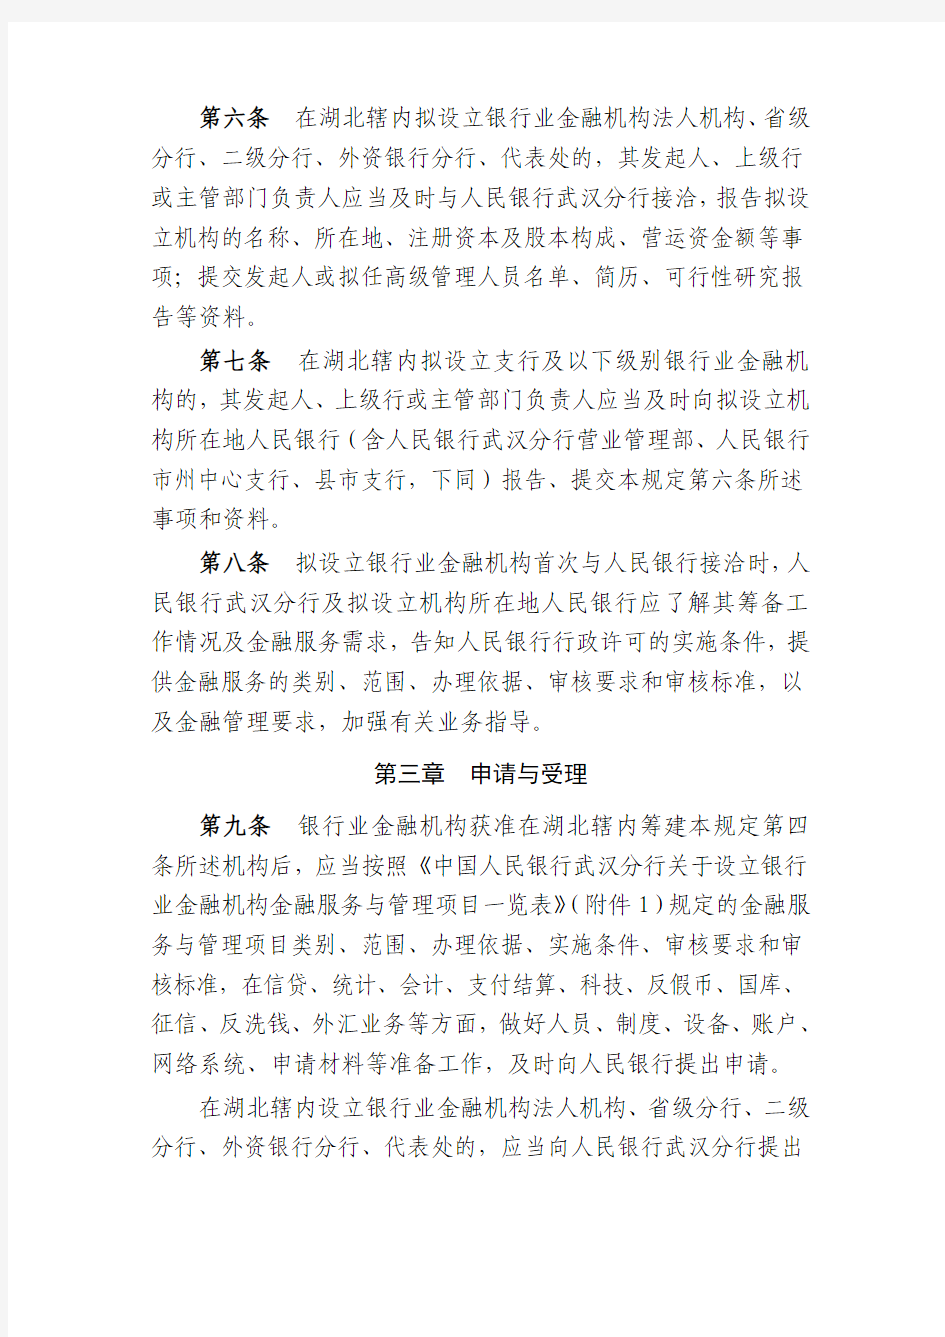 中国人民银行武汉分行关于设立银行业金融机构金融服务与管理规定(试行)